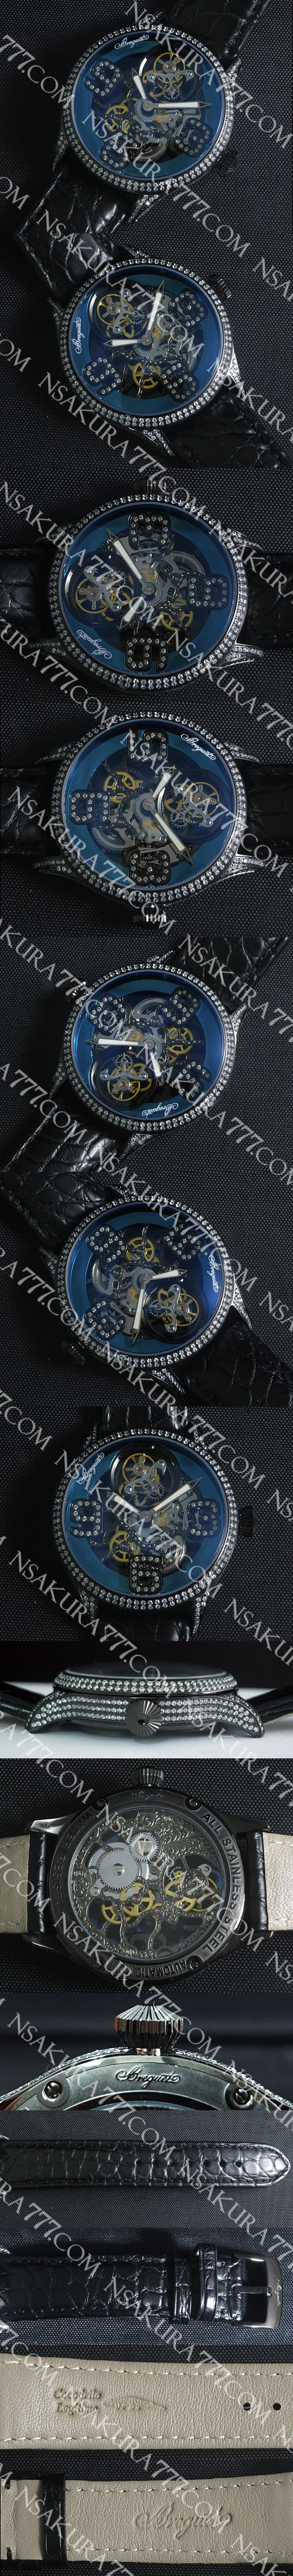 レプリカ時計ブレゲ トゥールビヨン 28800振動 (手巻き) - ウインドウを閉じる